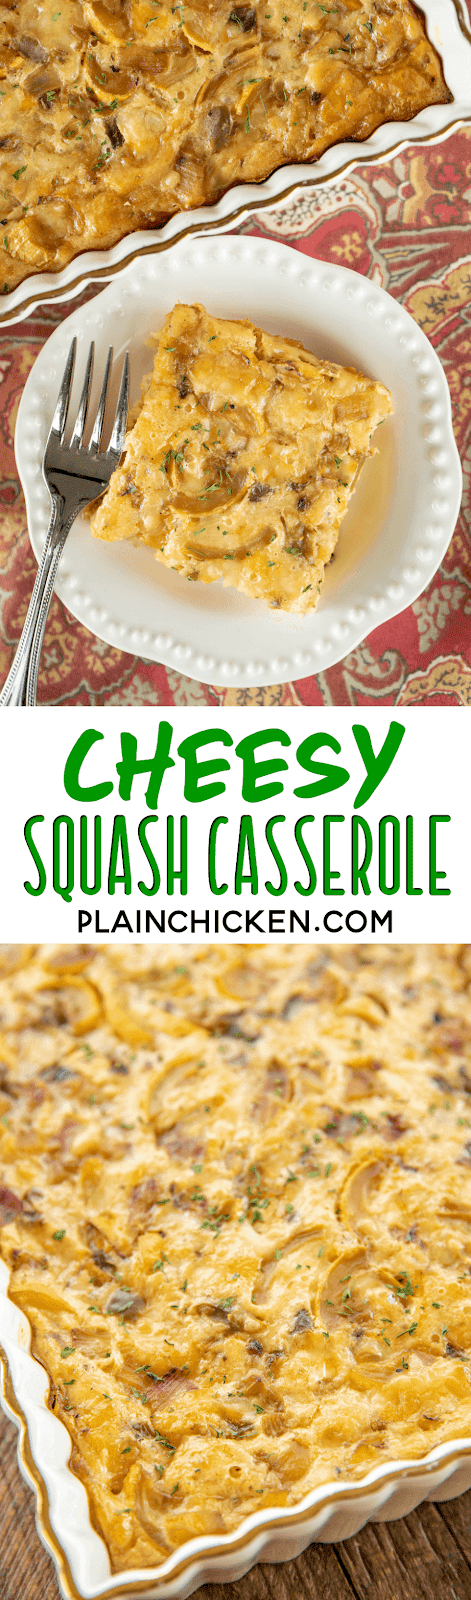 Cheesy Squash Casserole | Plain Chicken®